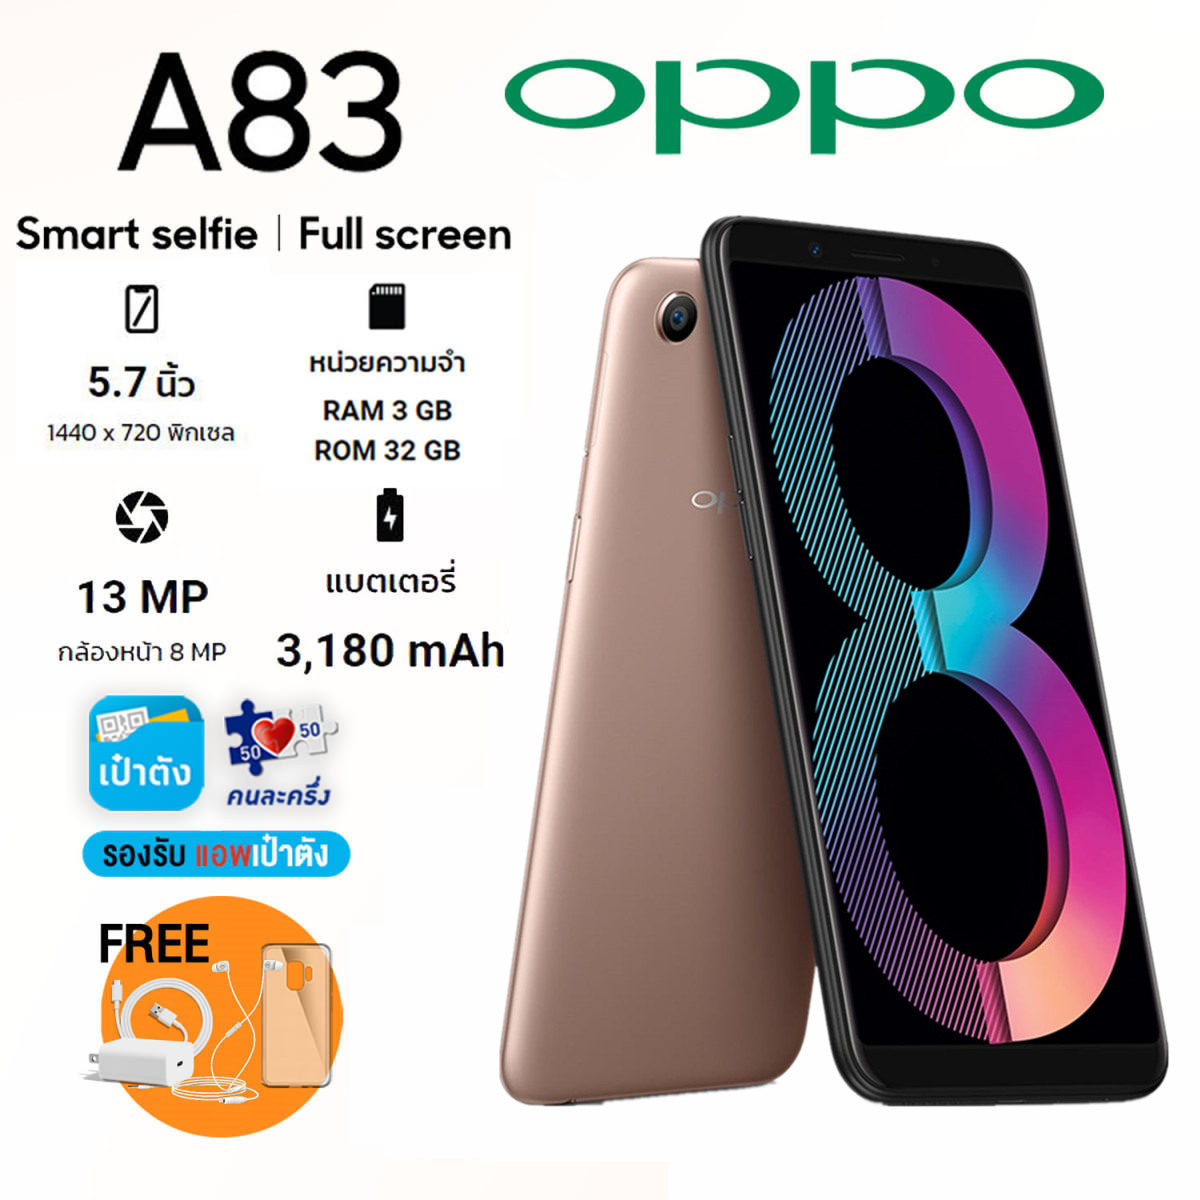 ?ลดล้างสต็อก? Oppo A83 แท้?% เครื่องใหม่ในซีล อุปกรณ์ครบกล่อง (ประกัน 3 เดือน) ฟรี!!